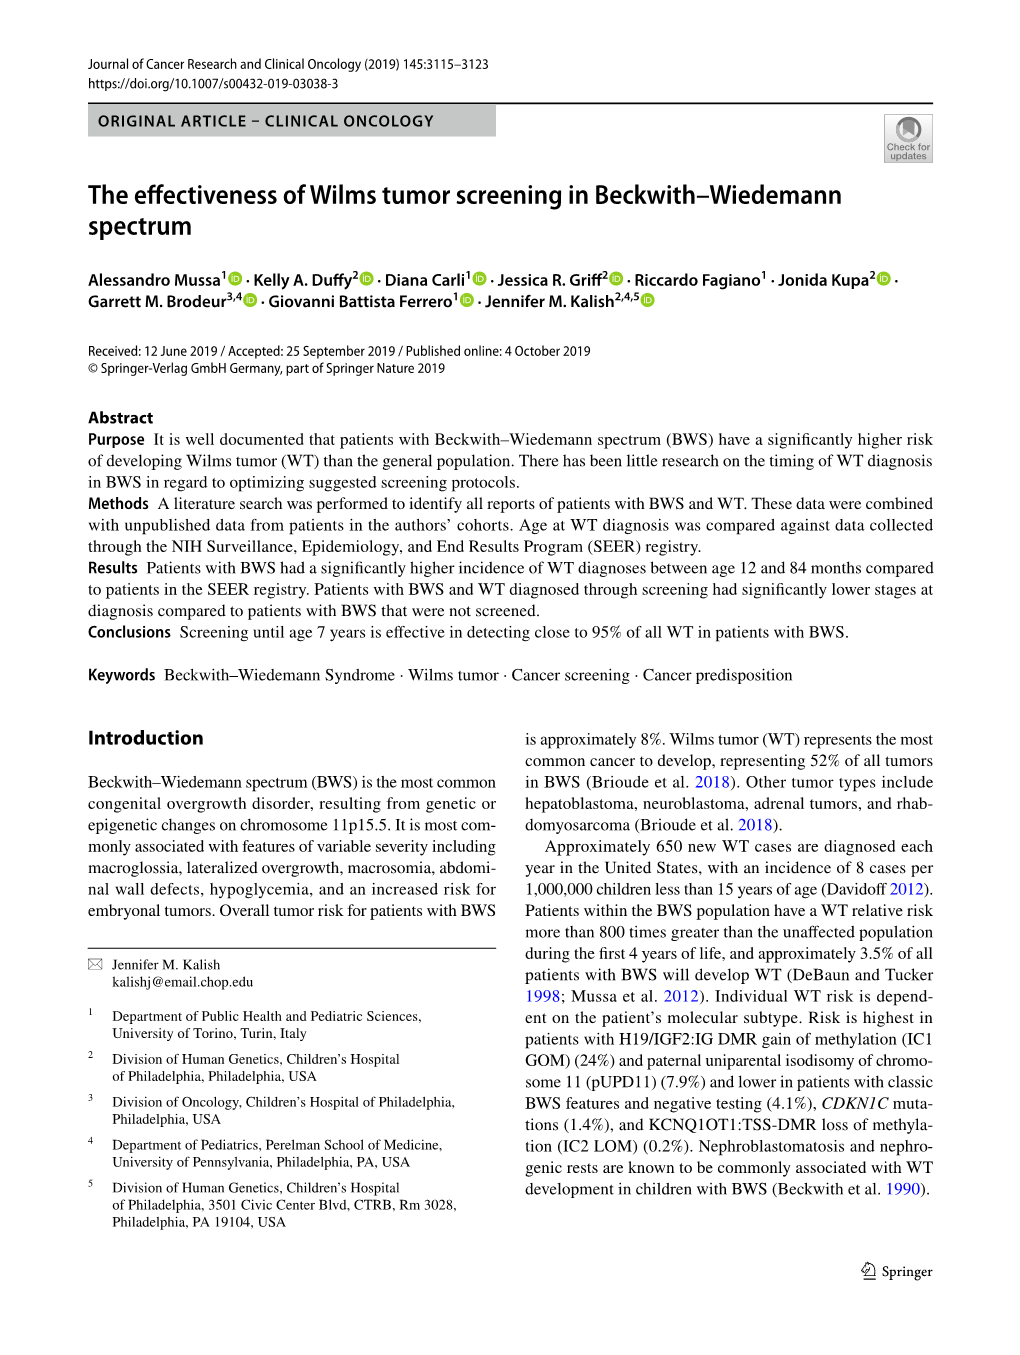 The Effectiveness of Wilms Tumor Screening in Beckwith–Wiedemann Spectrum